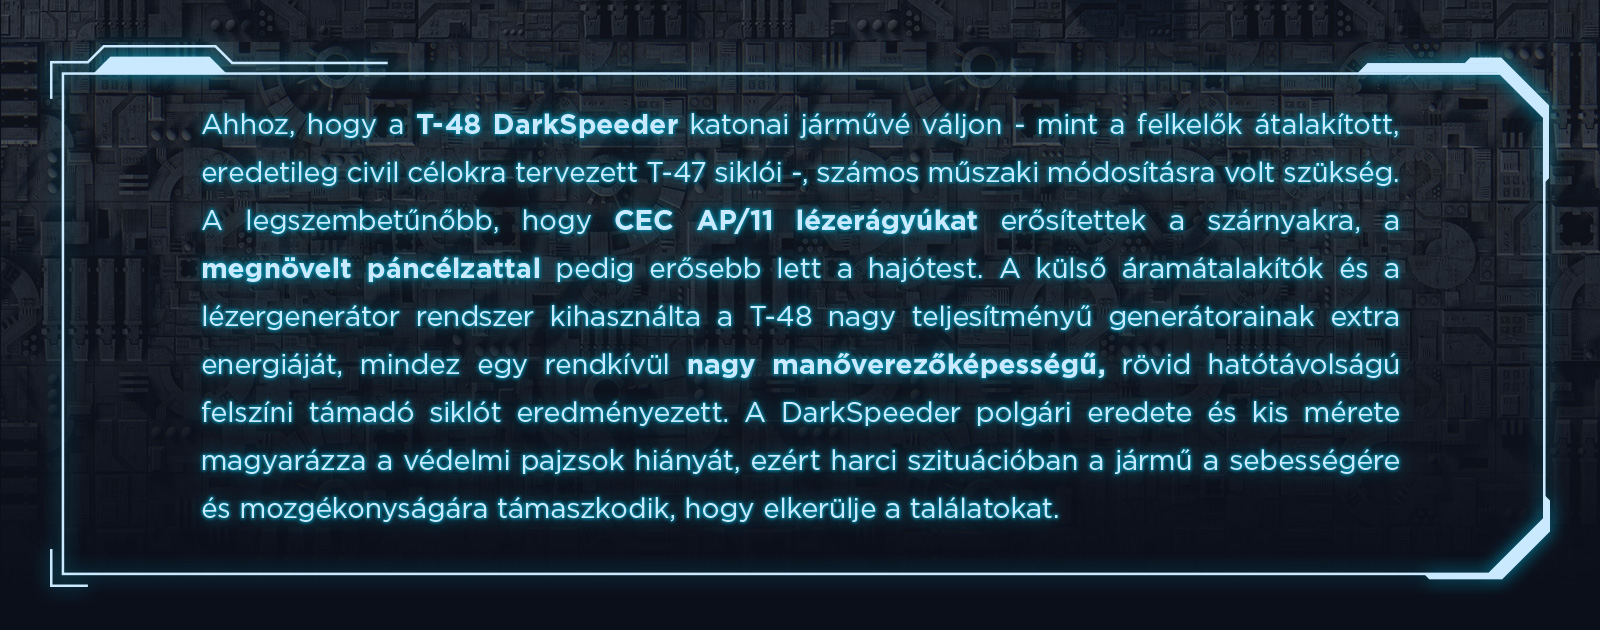 darkspeeder_01.jpg